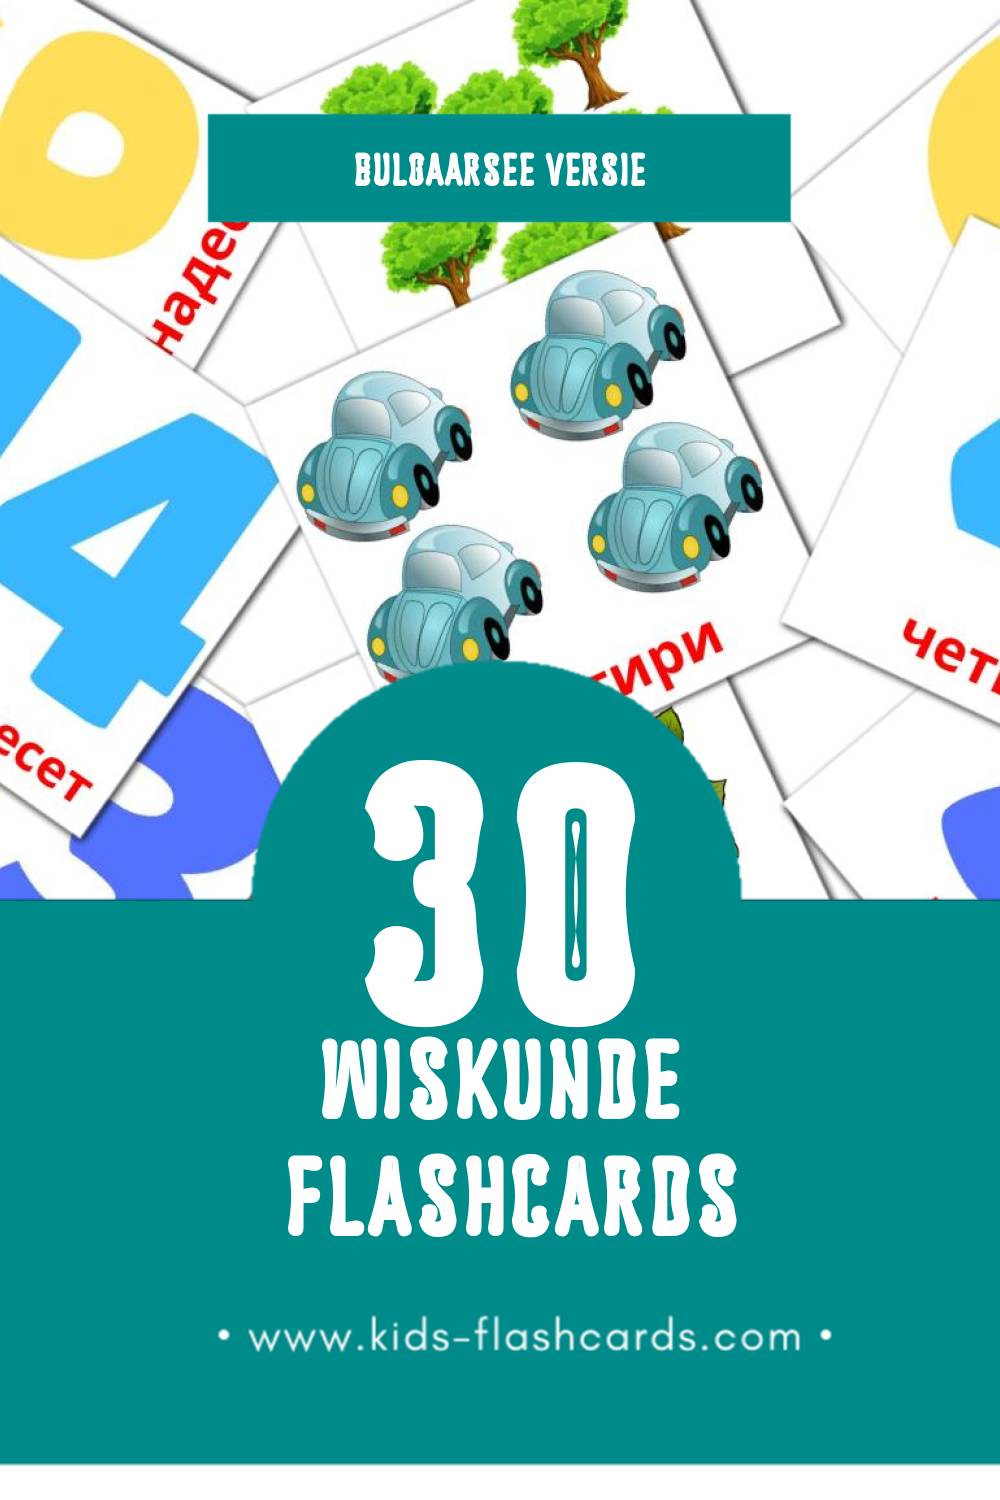 Visuele Математика Flashcards voor Kleuters (30 kaarten in het Bulgaarse)